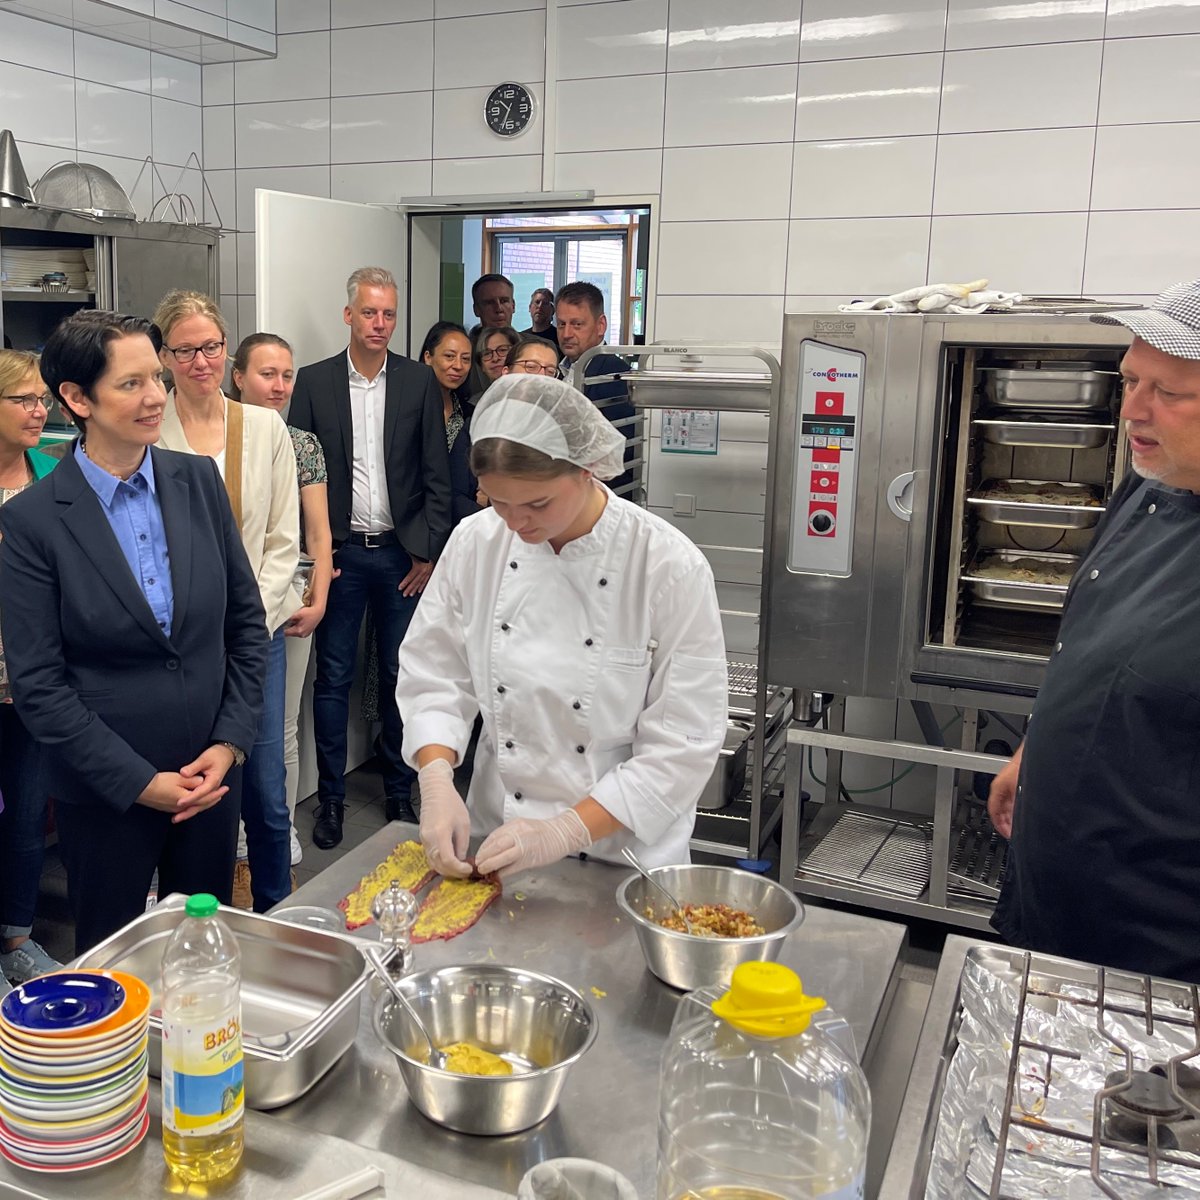 [1/2] 🍏🍅 🥦Erfolg in der #Öko-Modellregion #Niederrhein: Ministerin Gorißen besuchte heute die Schulmensa des @soskinderdorfde #Niederrhein, die als erste Kücheneinrichtung eine #Bio-Zertifizierung in der Modellregion erhielt ℹ️👉url.nrw/fnvr